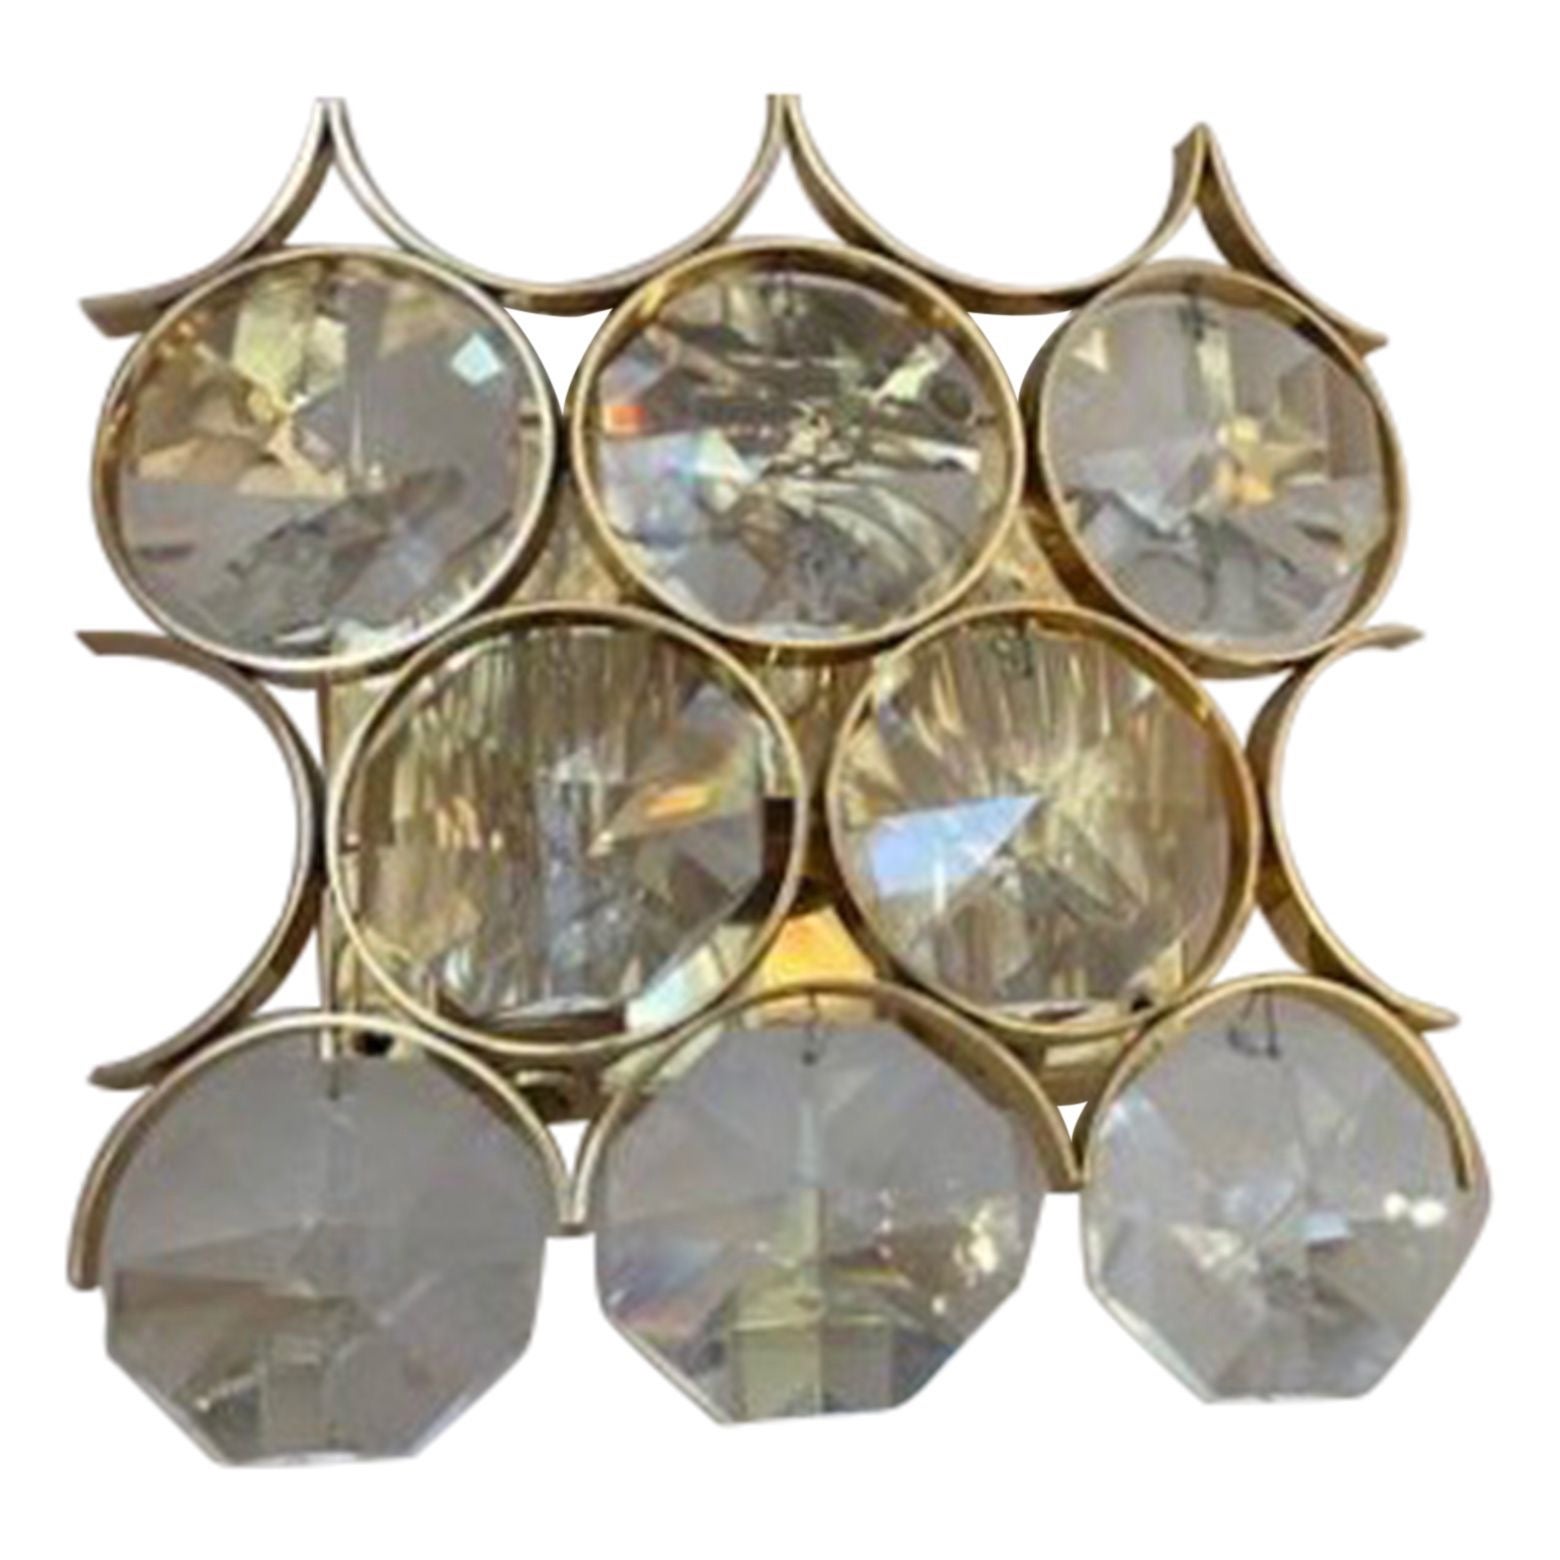 Ein Paar Wandleuchter aus vergoldetem Messing und rautenförmigem Glas von Palwa aus den 1960er Jahren. 
Eine einzelne Wandleuchte ist ebenfalls erhältlich, bitte fragen Sie an.
